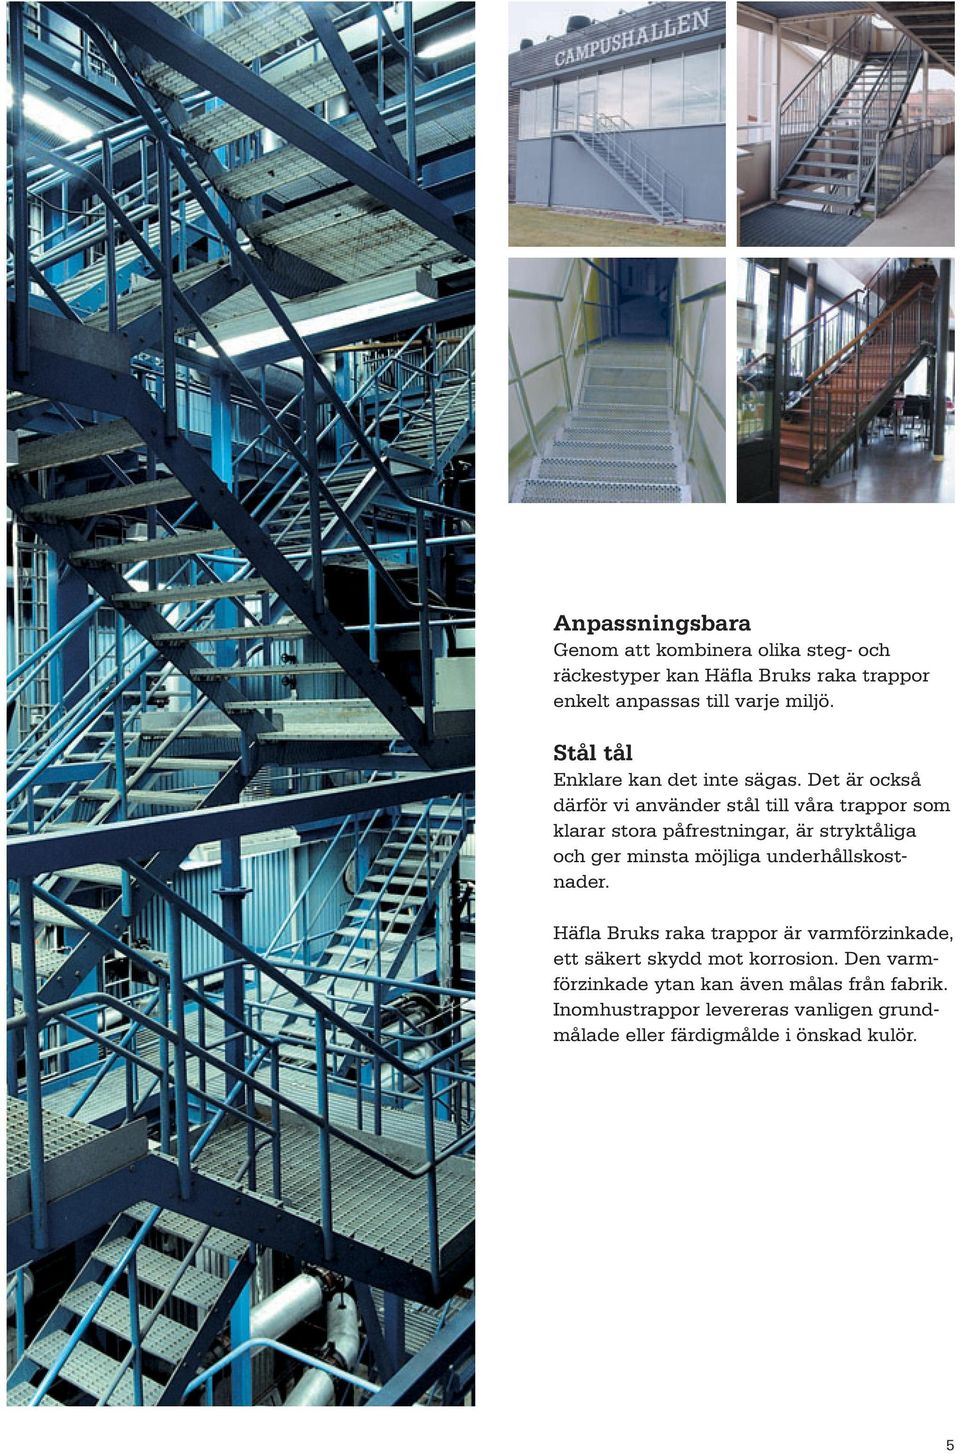 Det är också därför vi använder stål till våra trappor som klarar stora påfrestningar, är stryktåliga och ger minsta möjliga